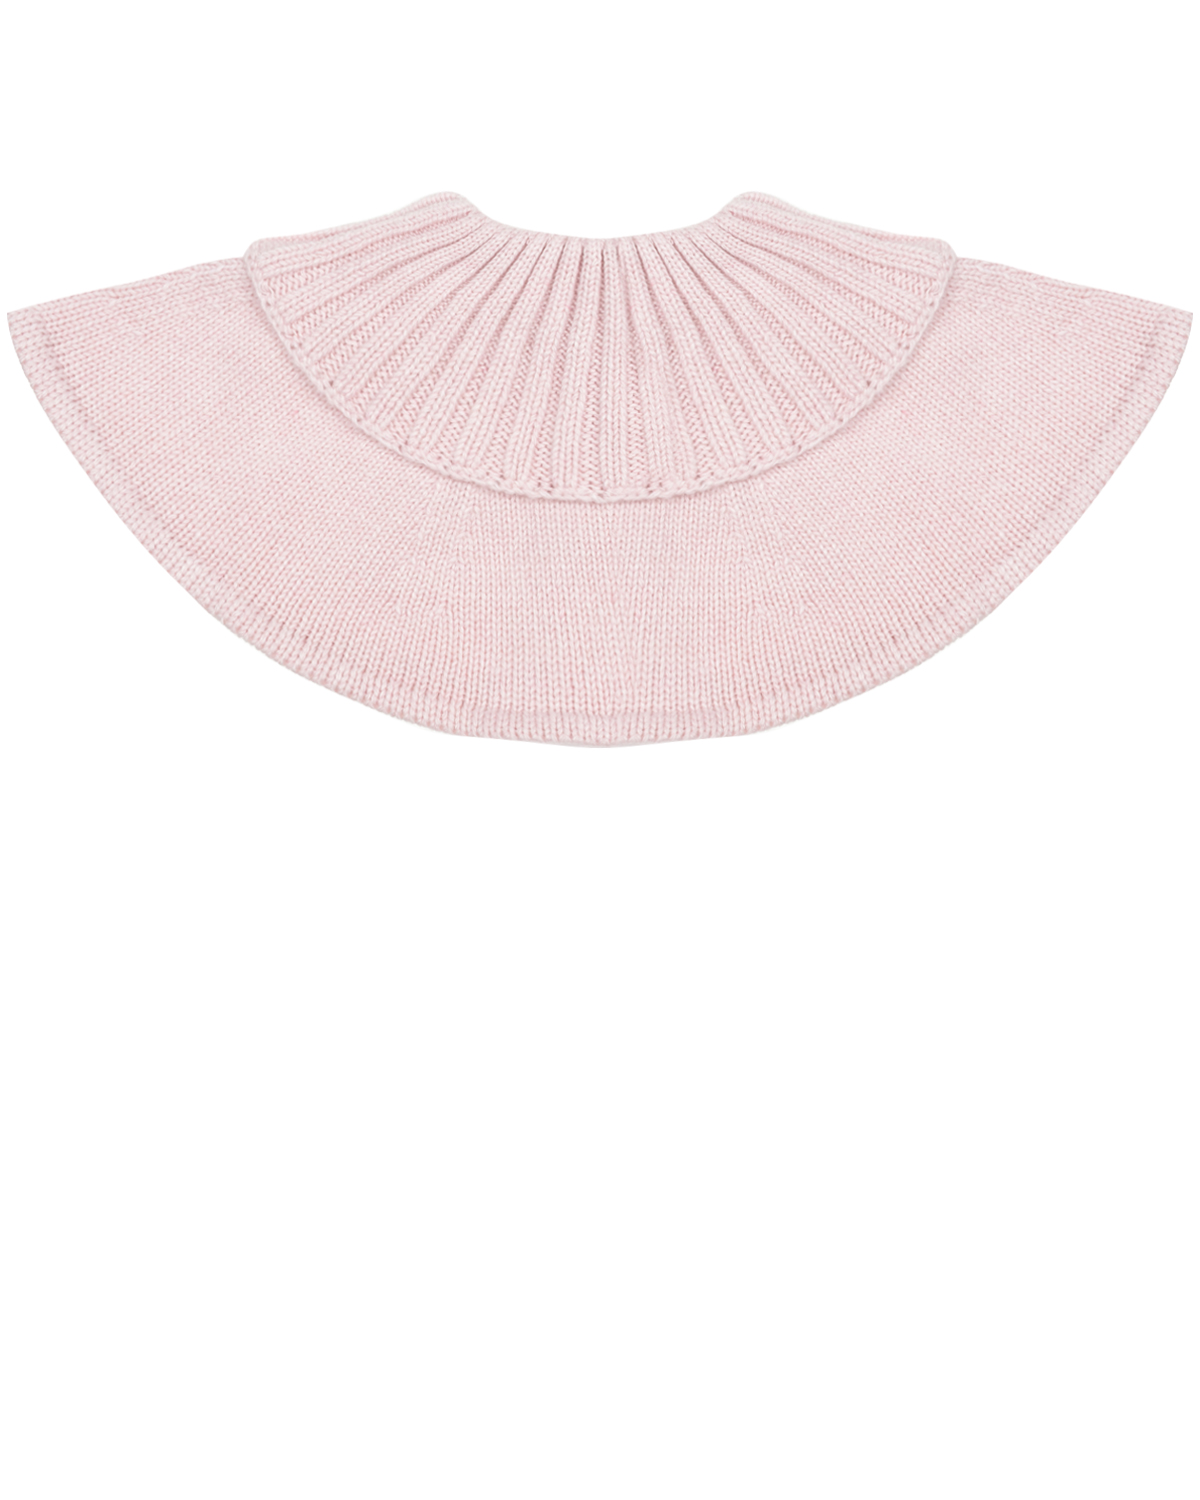 Розовый шарф-горло из кашемира Chobi детский, размер unica - фото 1